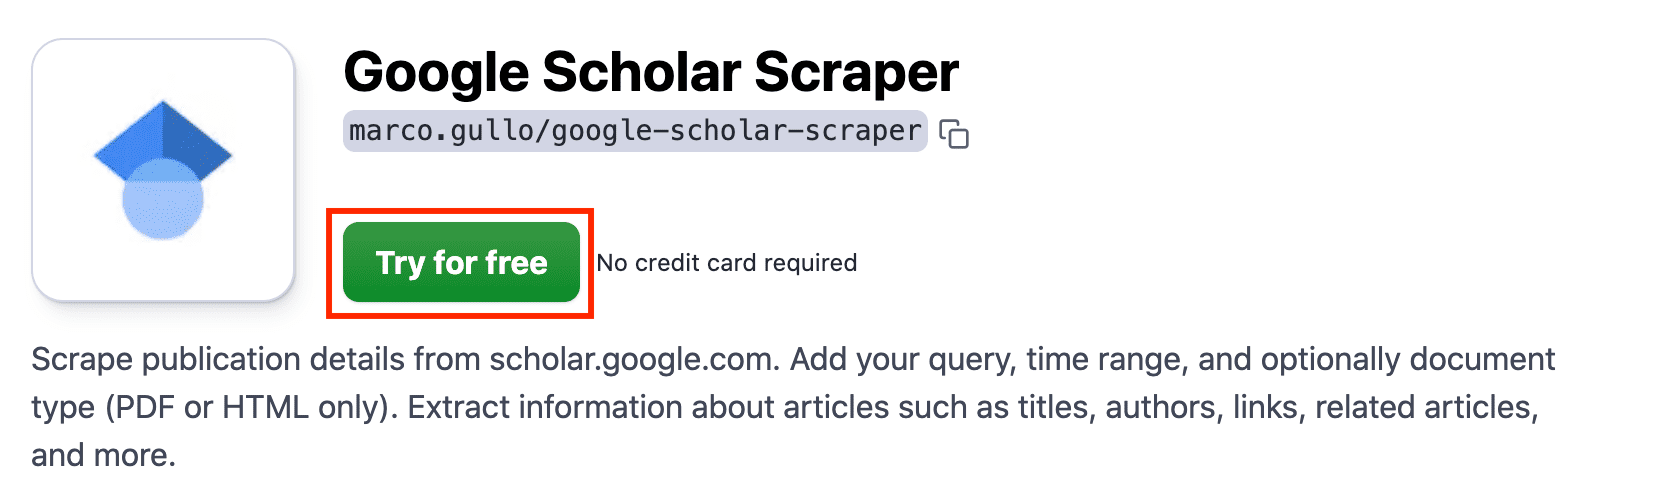 Scrape publication details from scholar.google.com